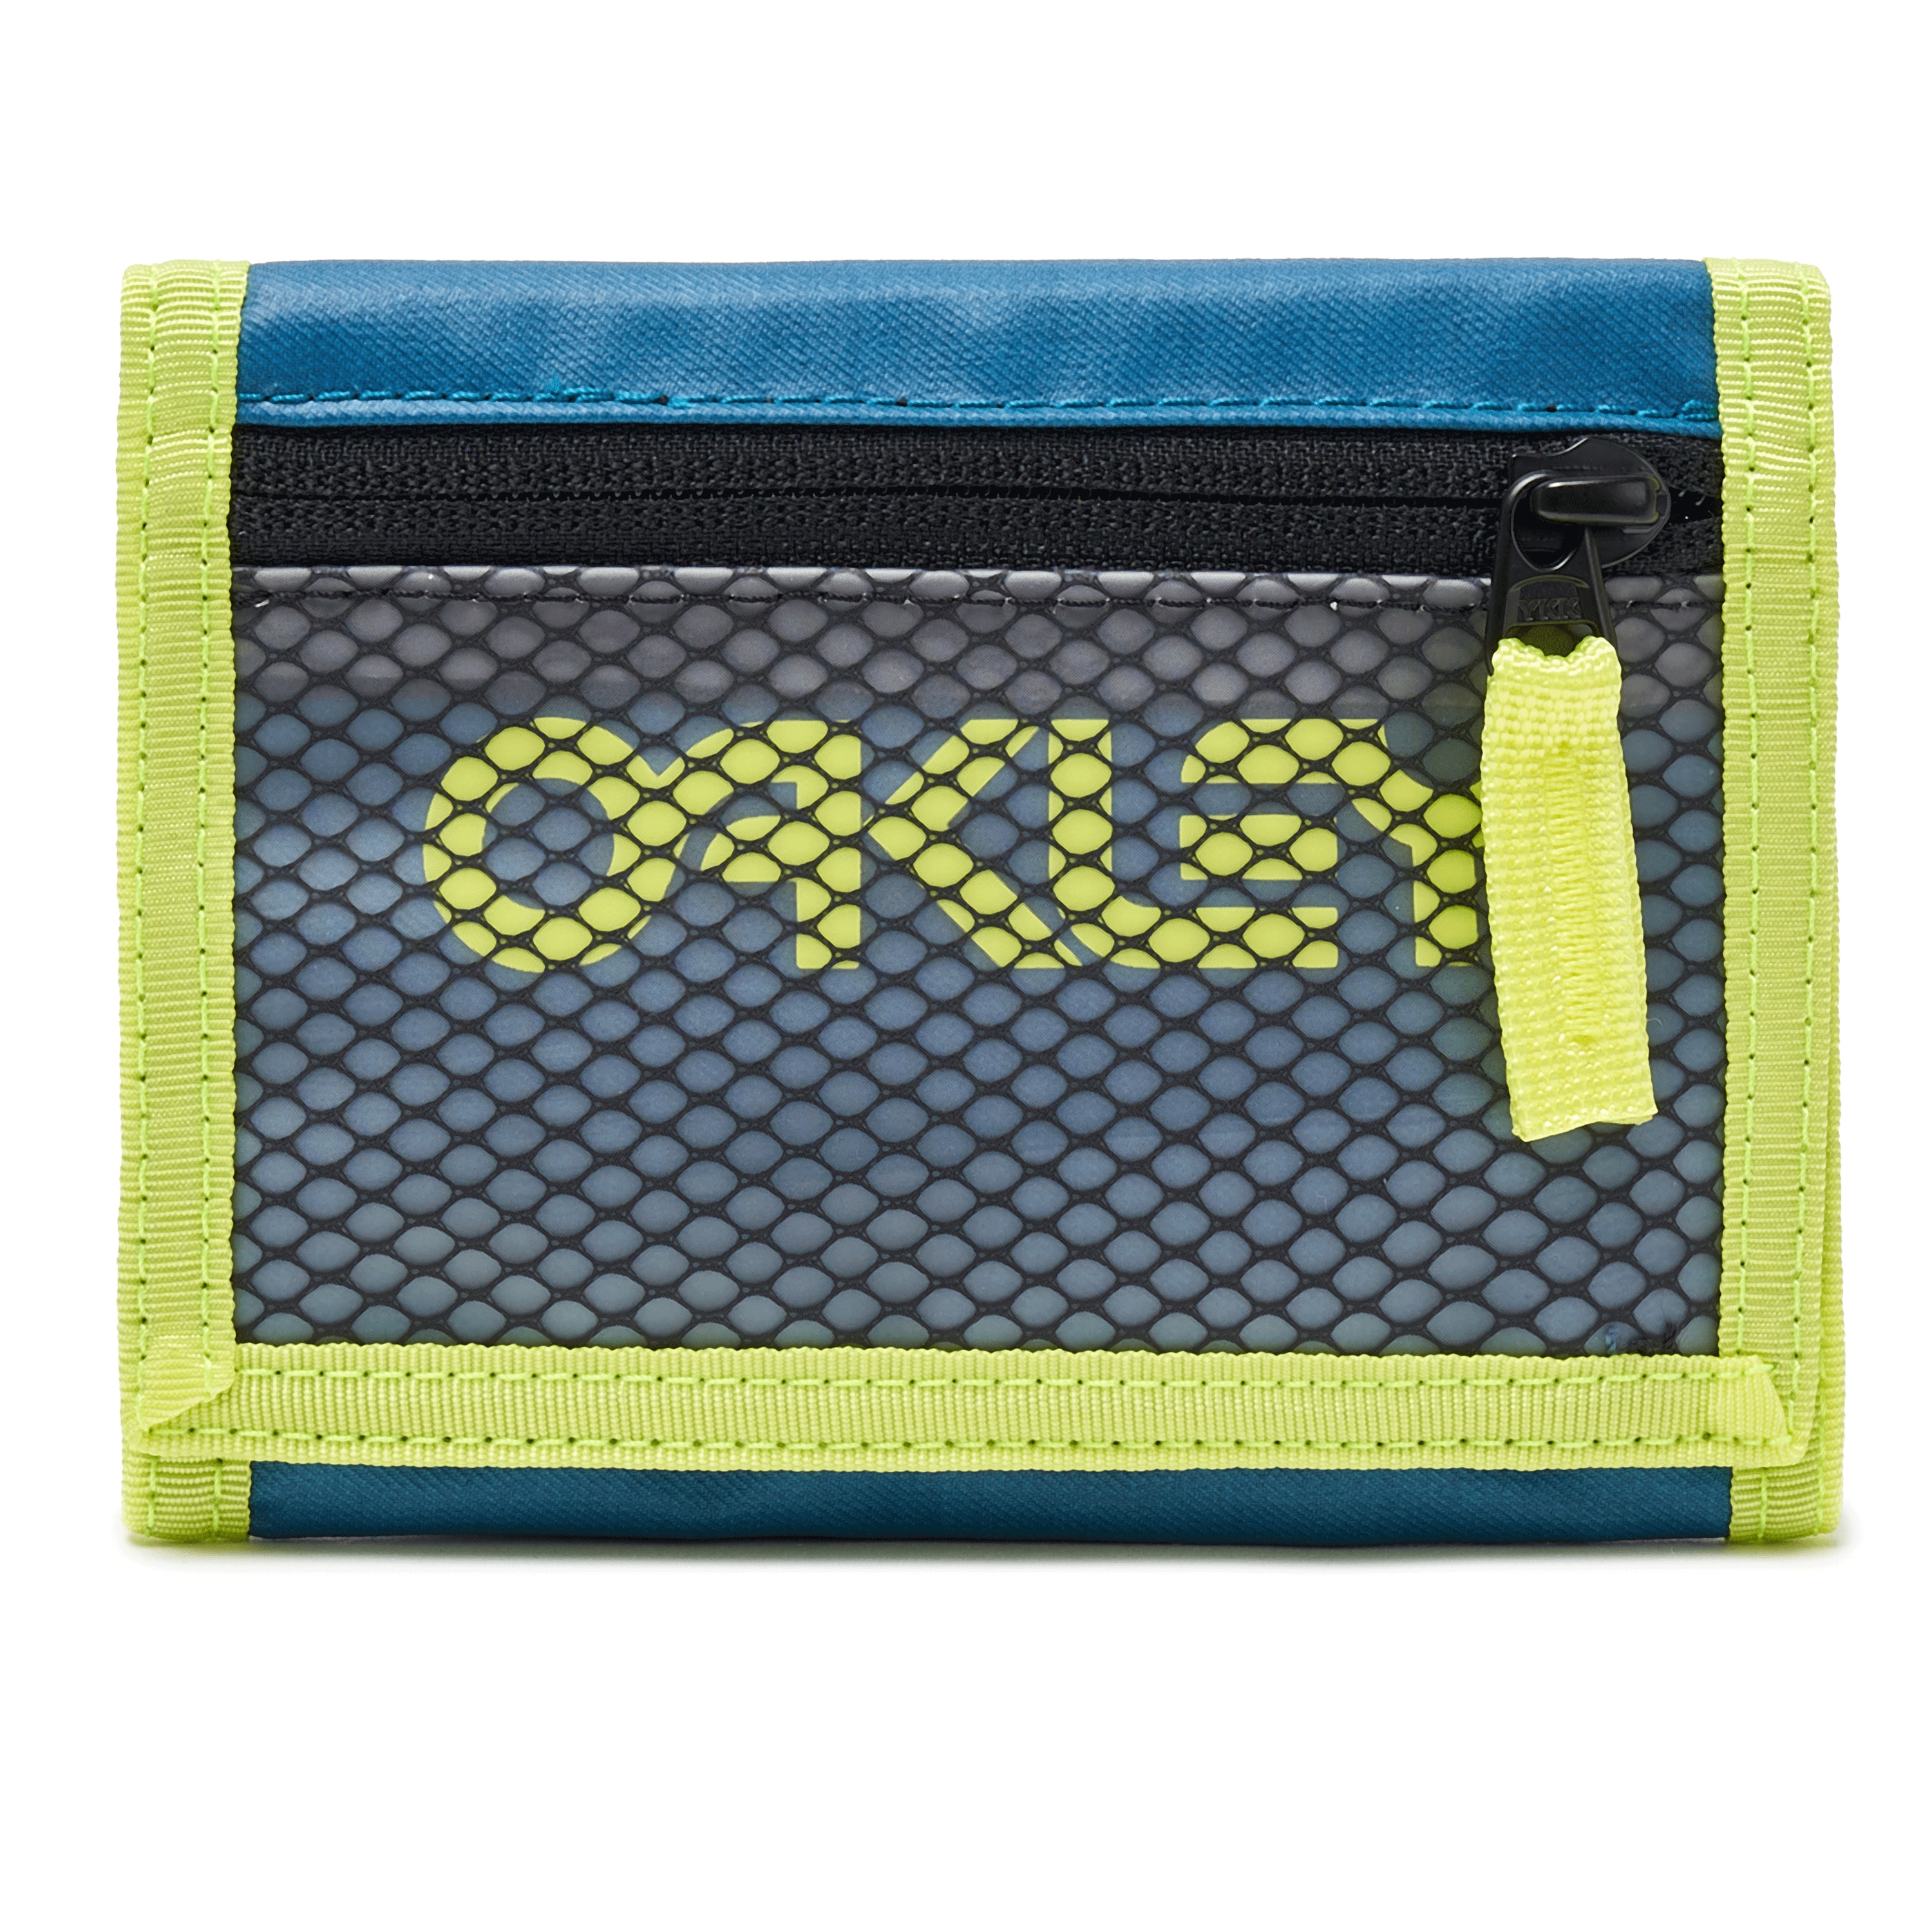 oakley wallet for sale